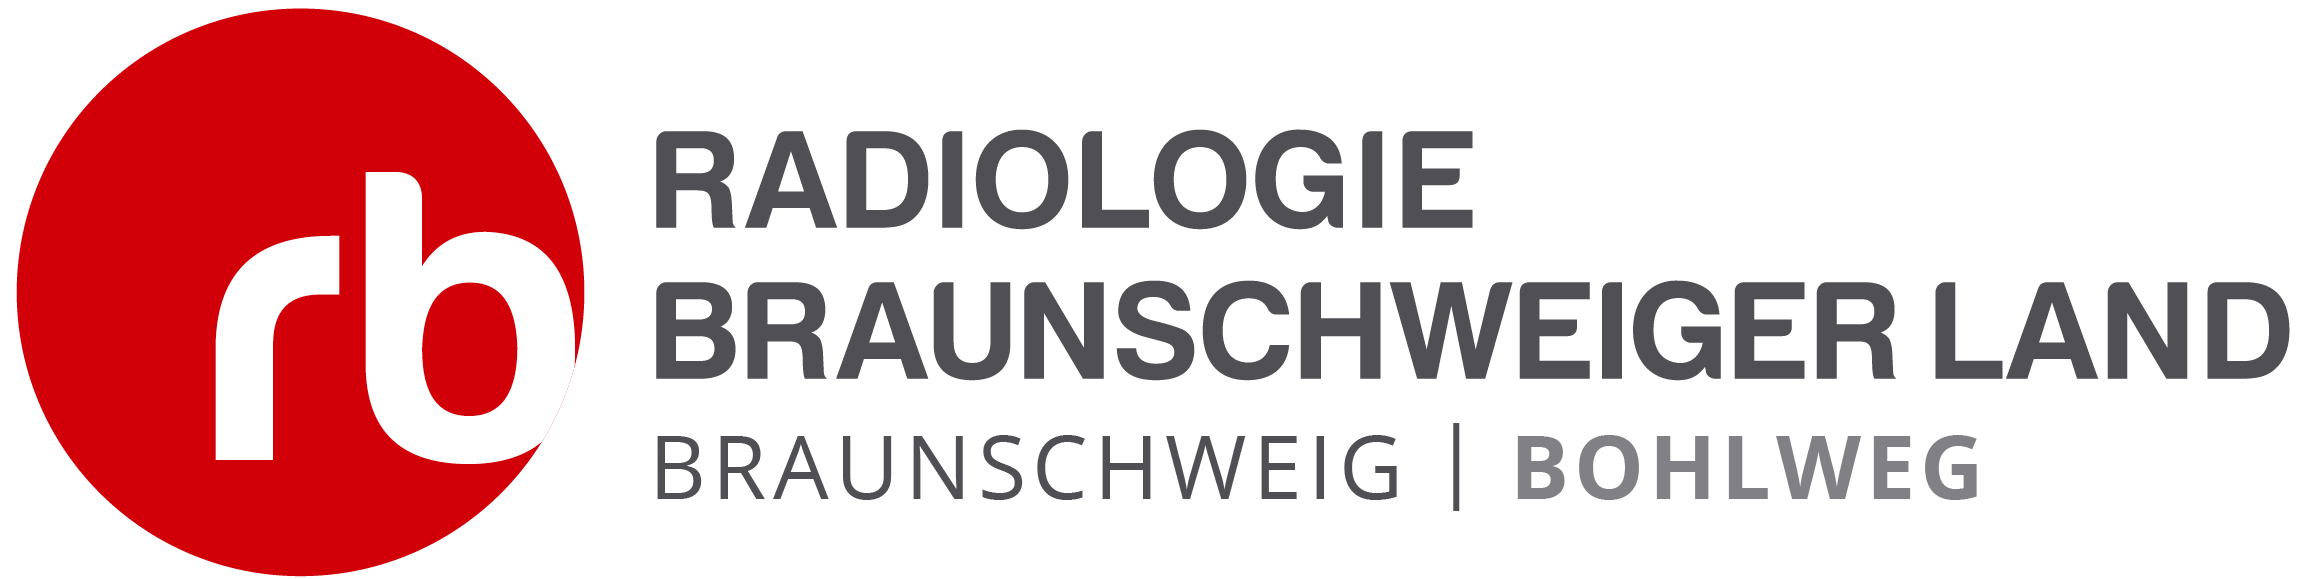 Radiologie Bohlweg